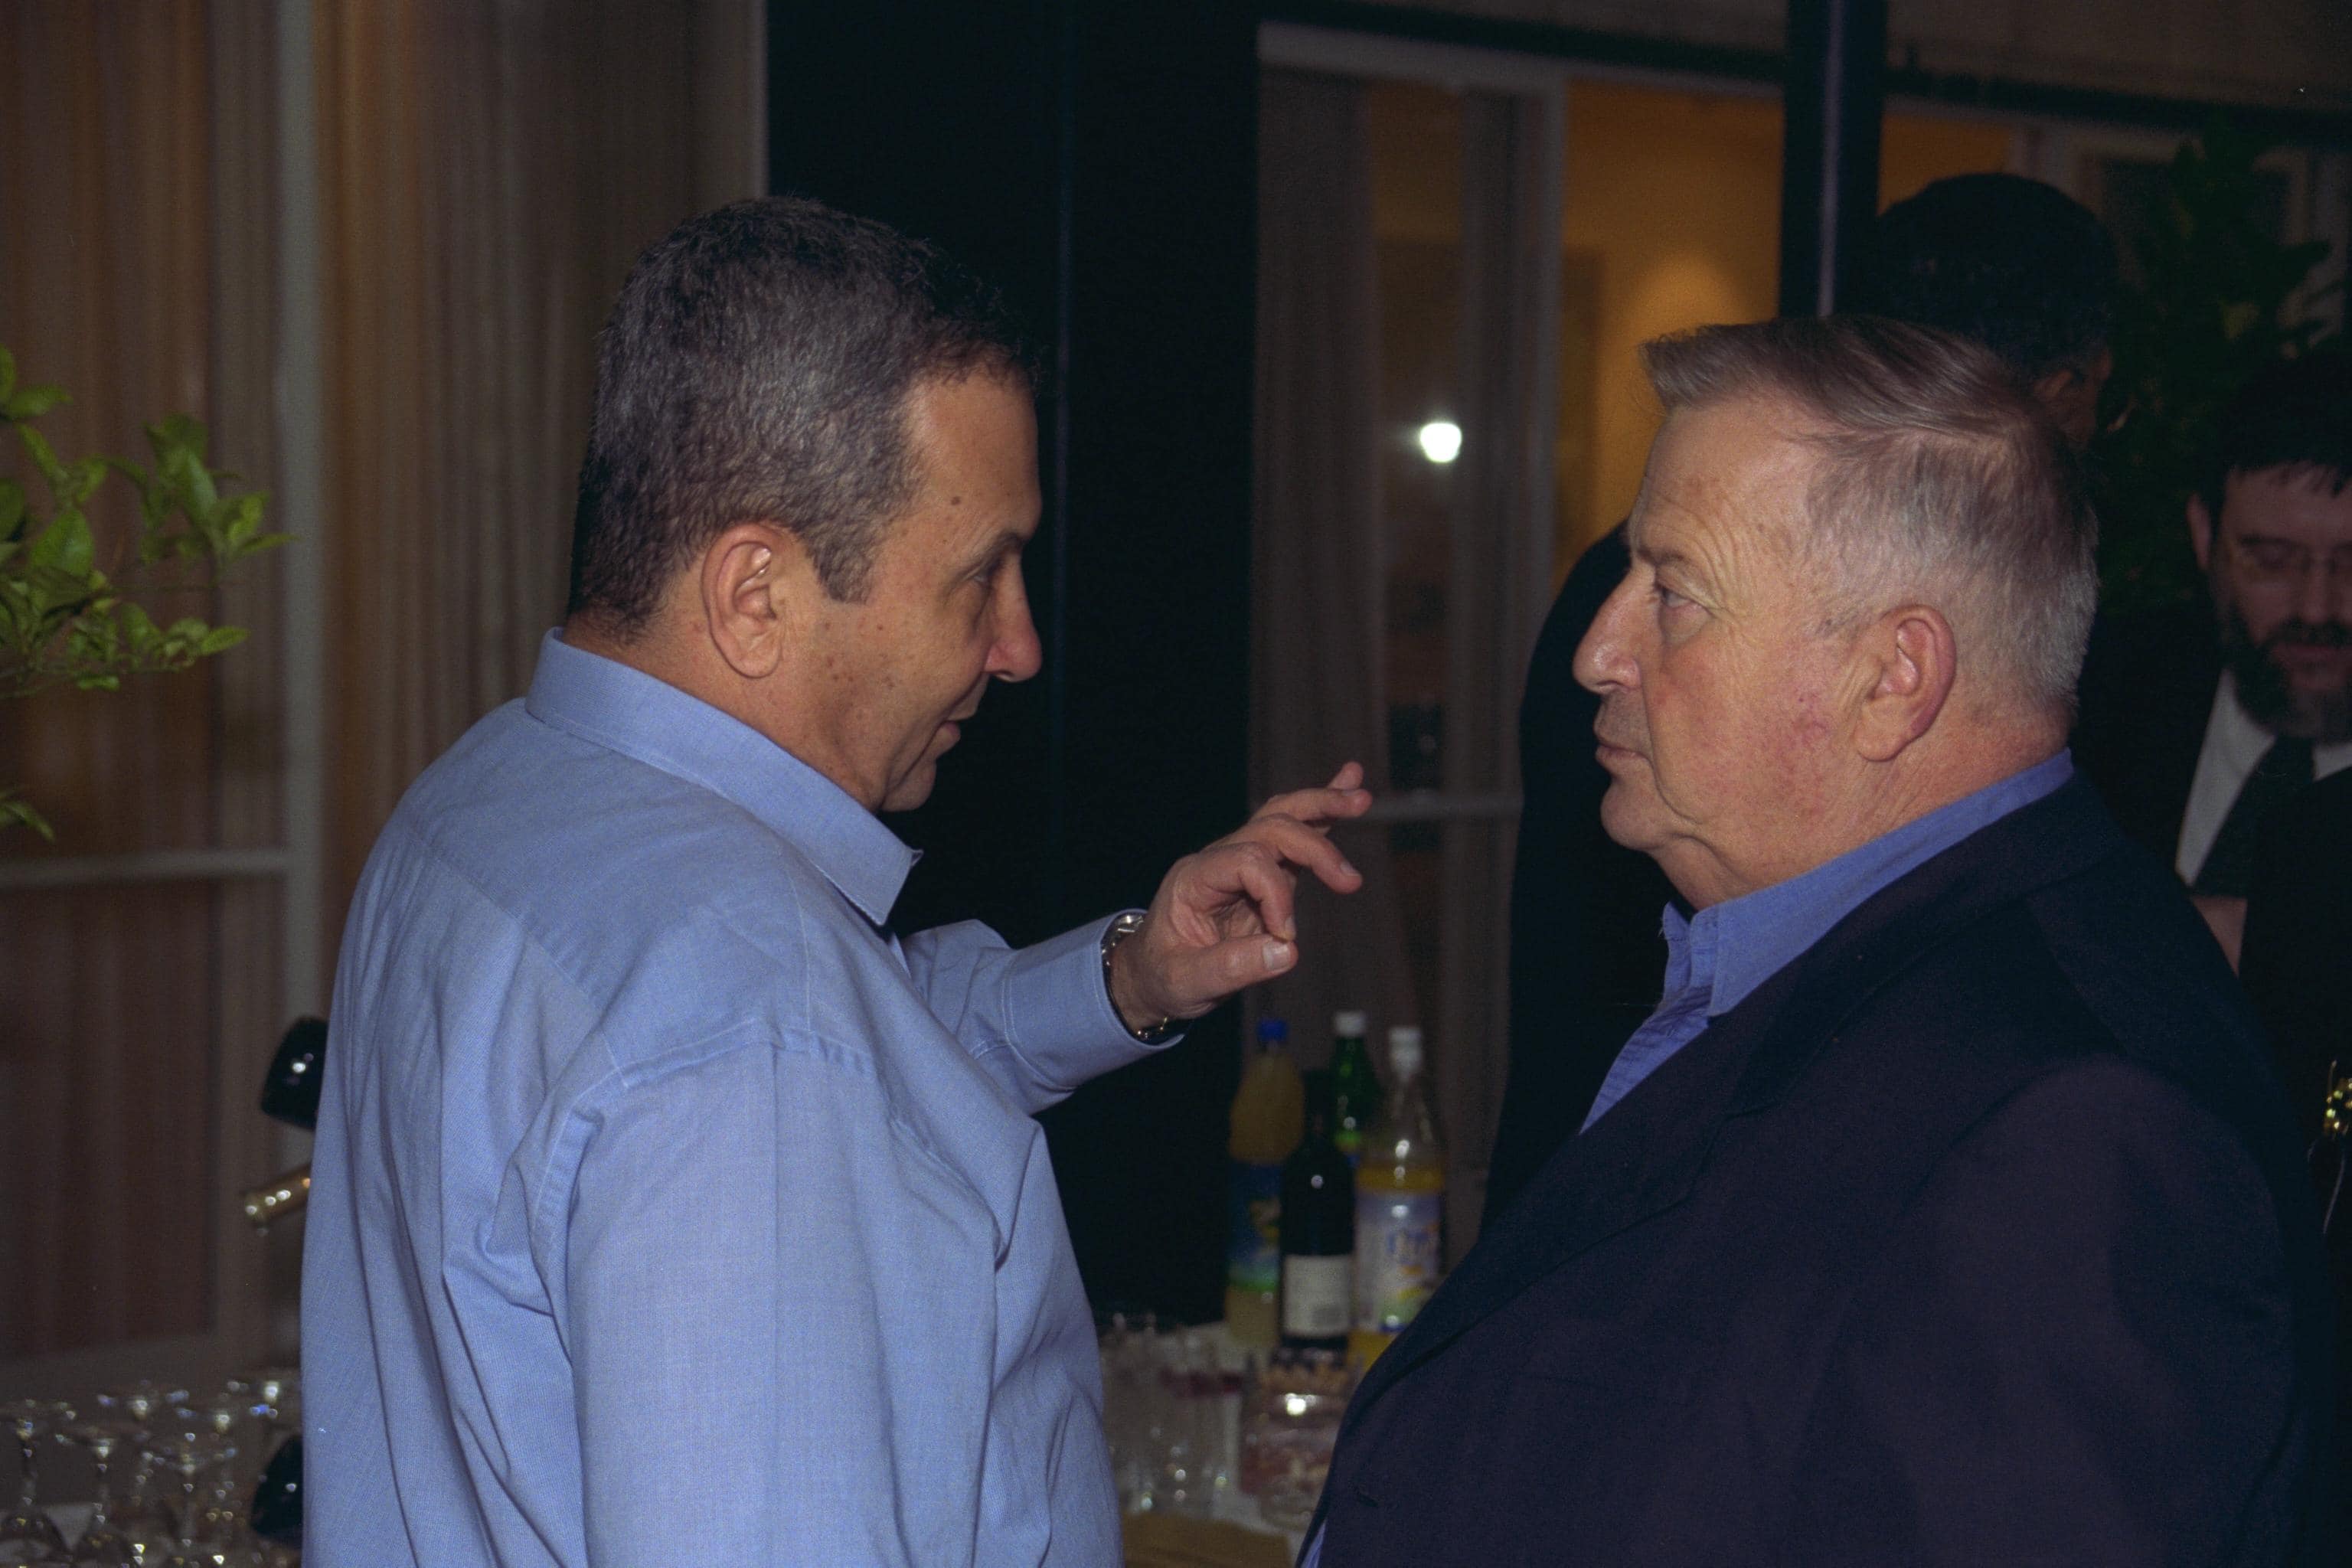 שר האוצר לשעבר, אברהם בייגה שוחט ז&quot;ל, וראש הממשלה לשעבר אהוד ברק, אוגוסט 2003 (צילום: סער יעקב, לע"מ)